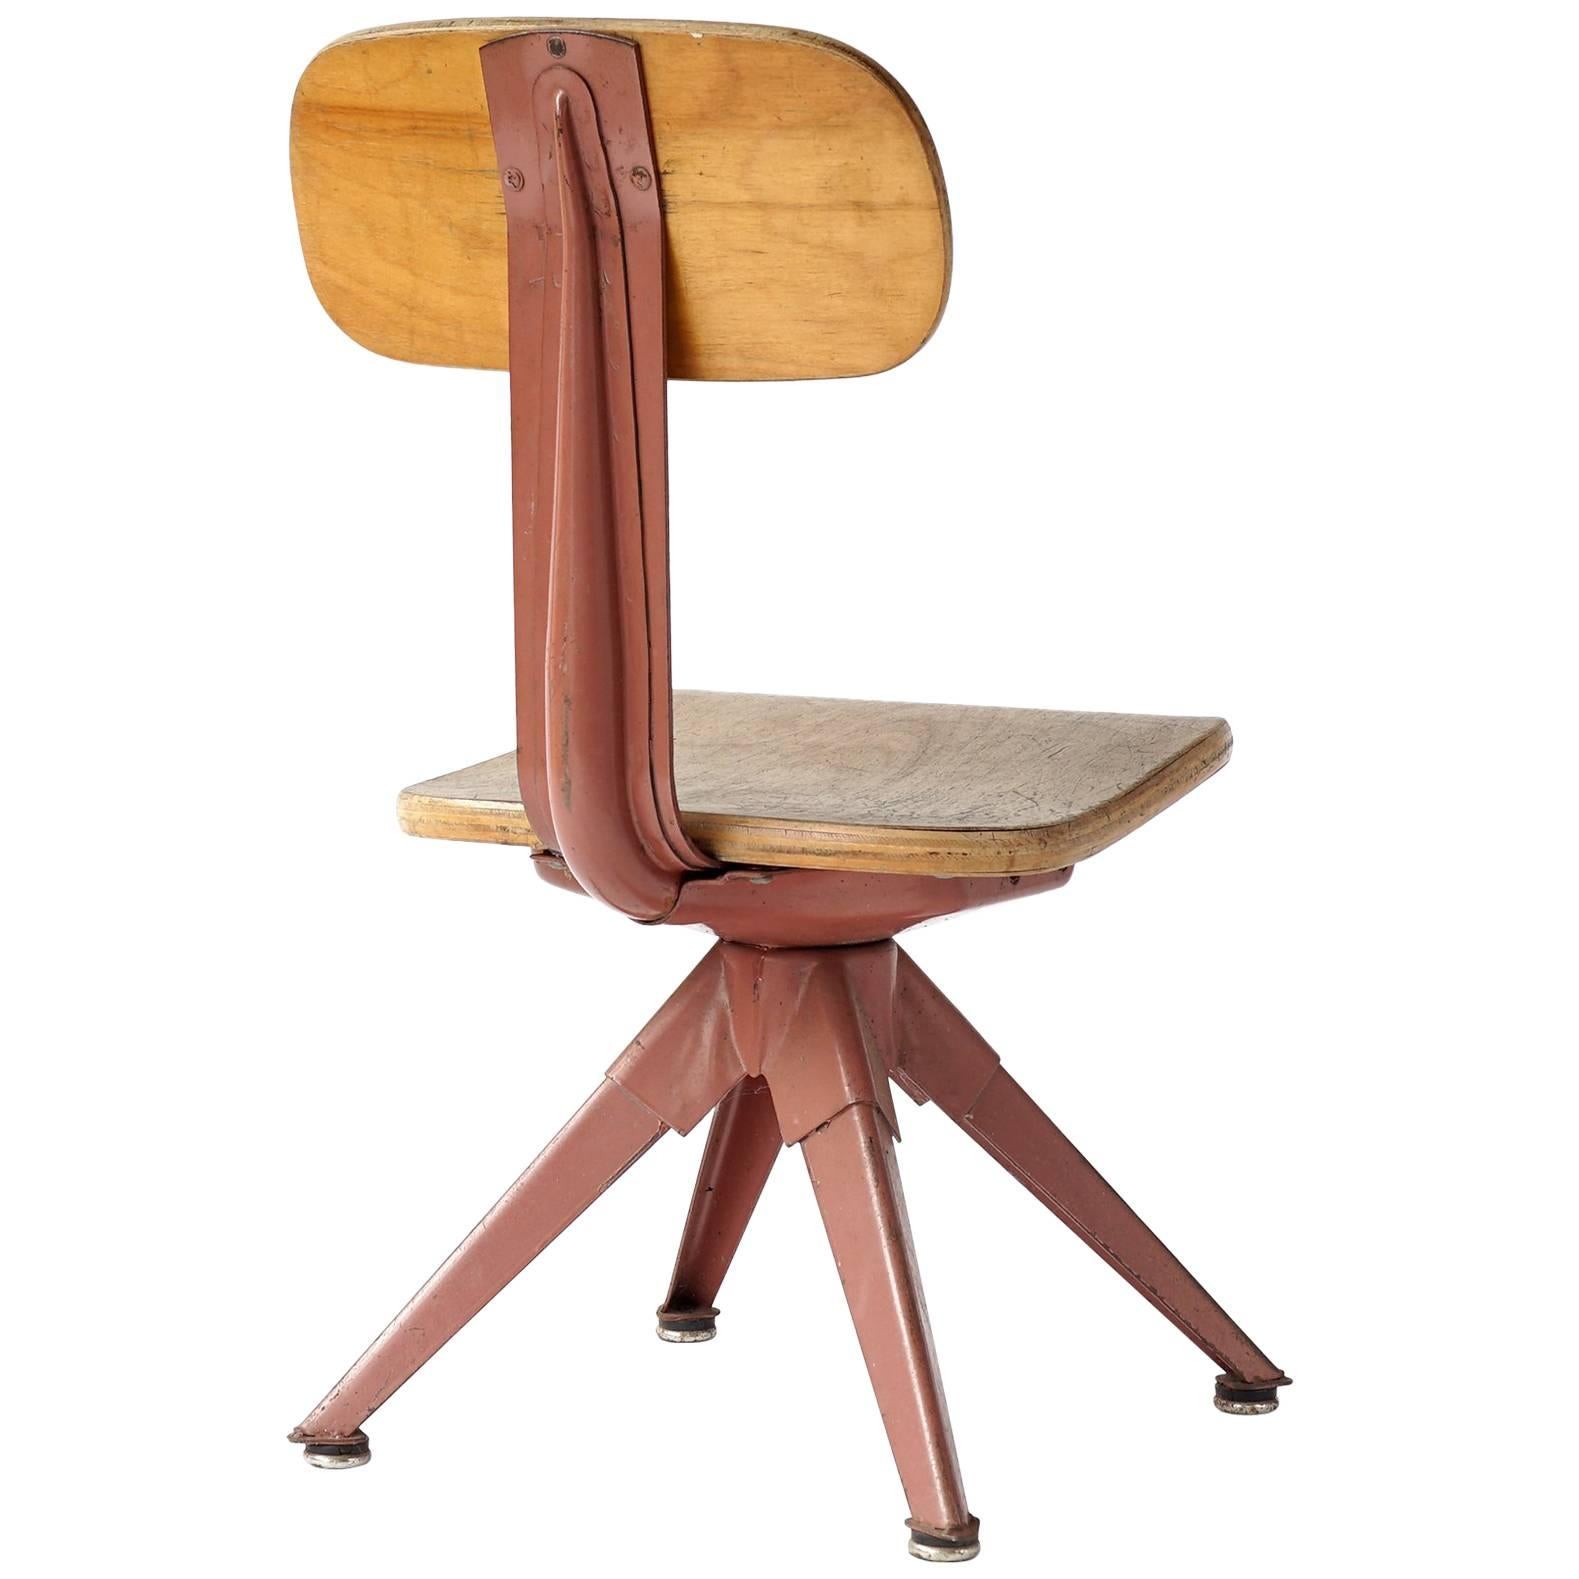 Odelberg Olsen Influenced Child's Chair